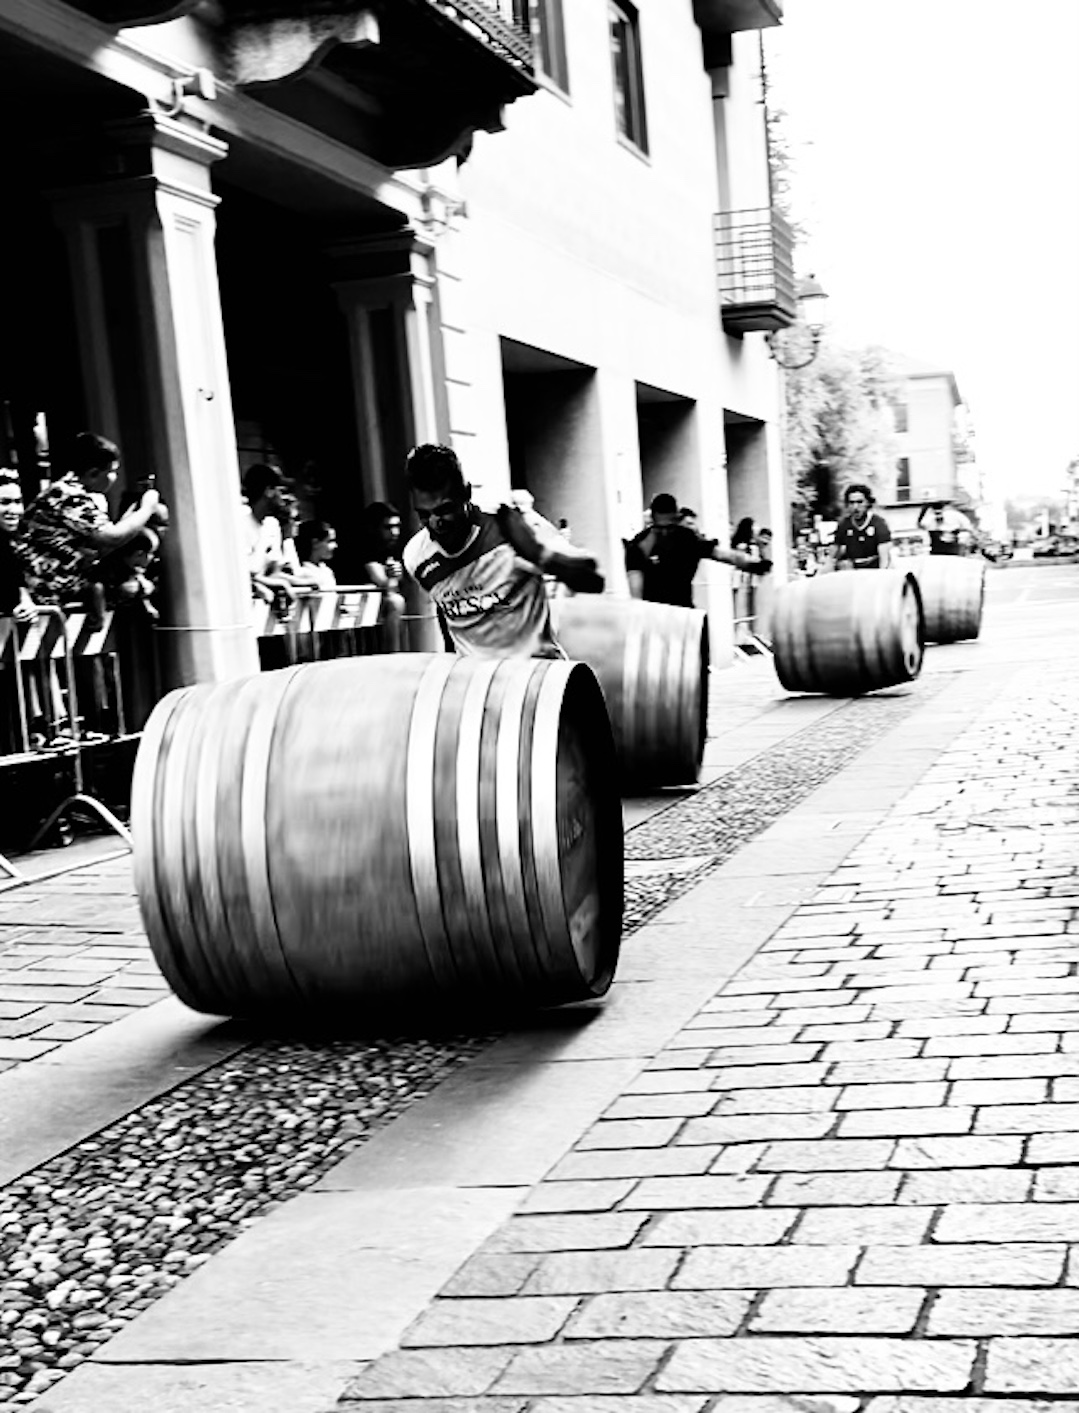 Barrel race in Nizza Monferrato...